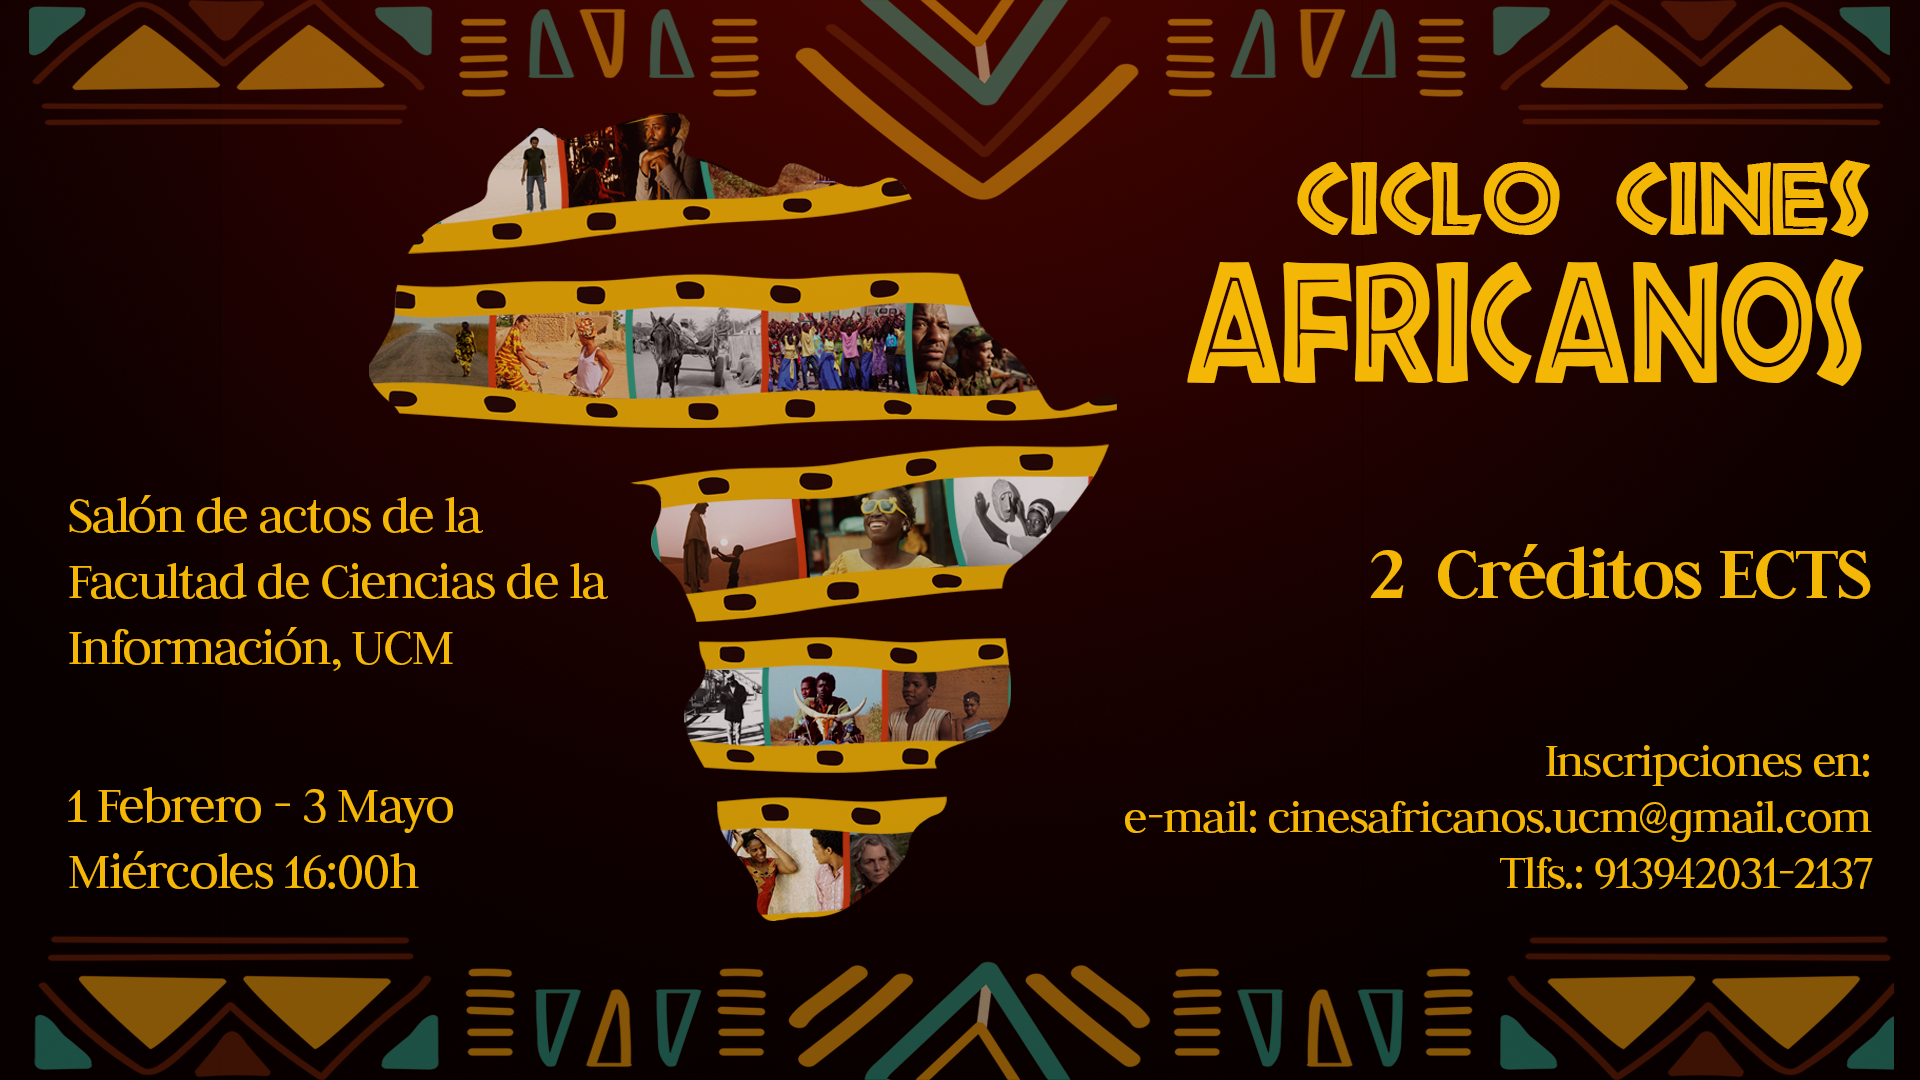 Ciclo de Cines Africanos UCM